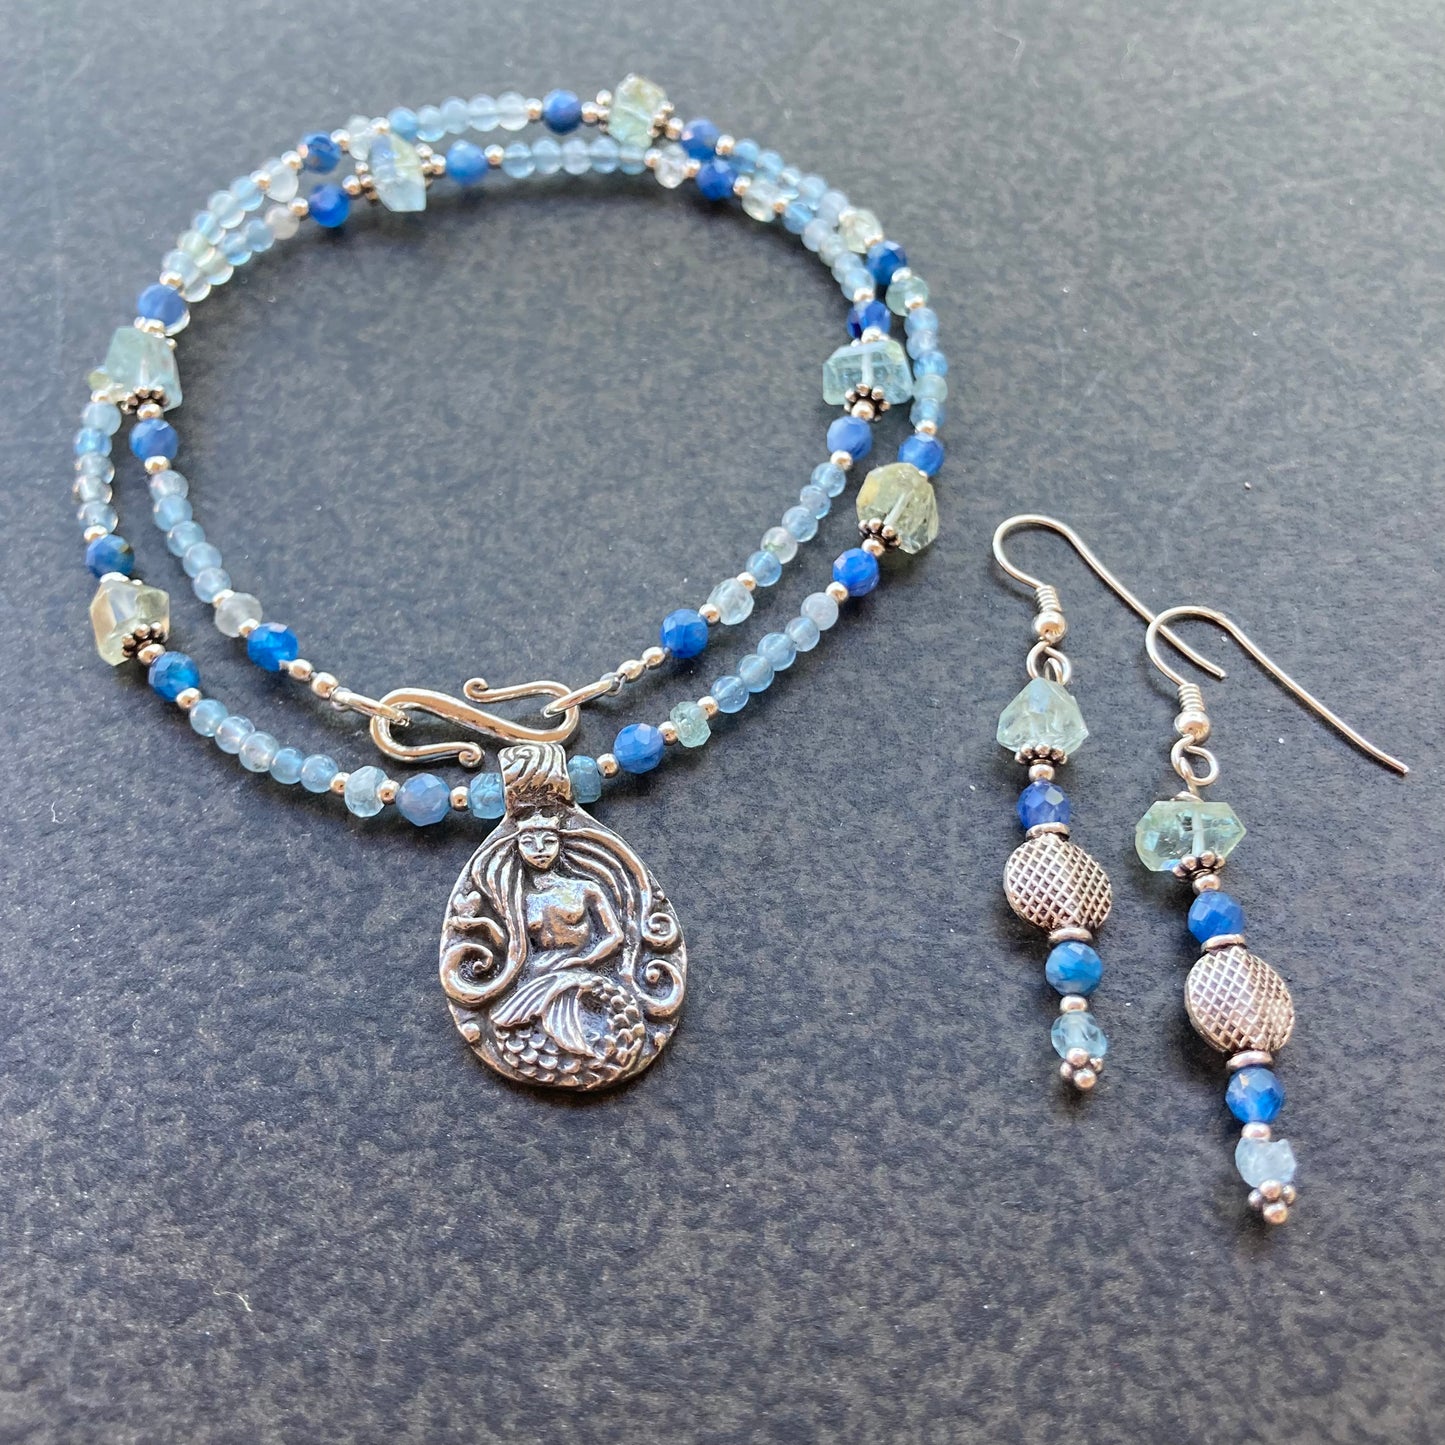 Aquamarine, Kyanite & Sterling Silver Earrings